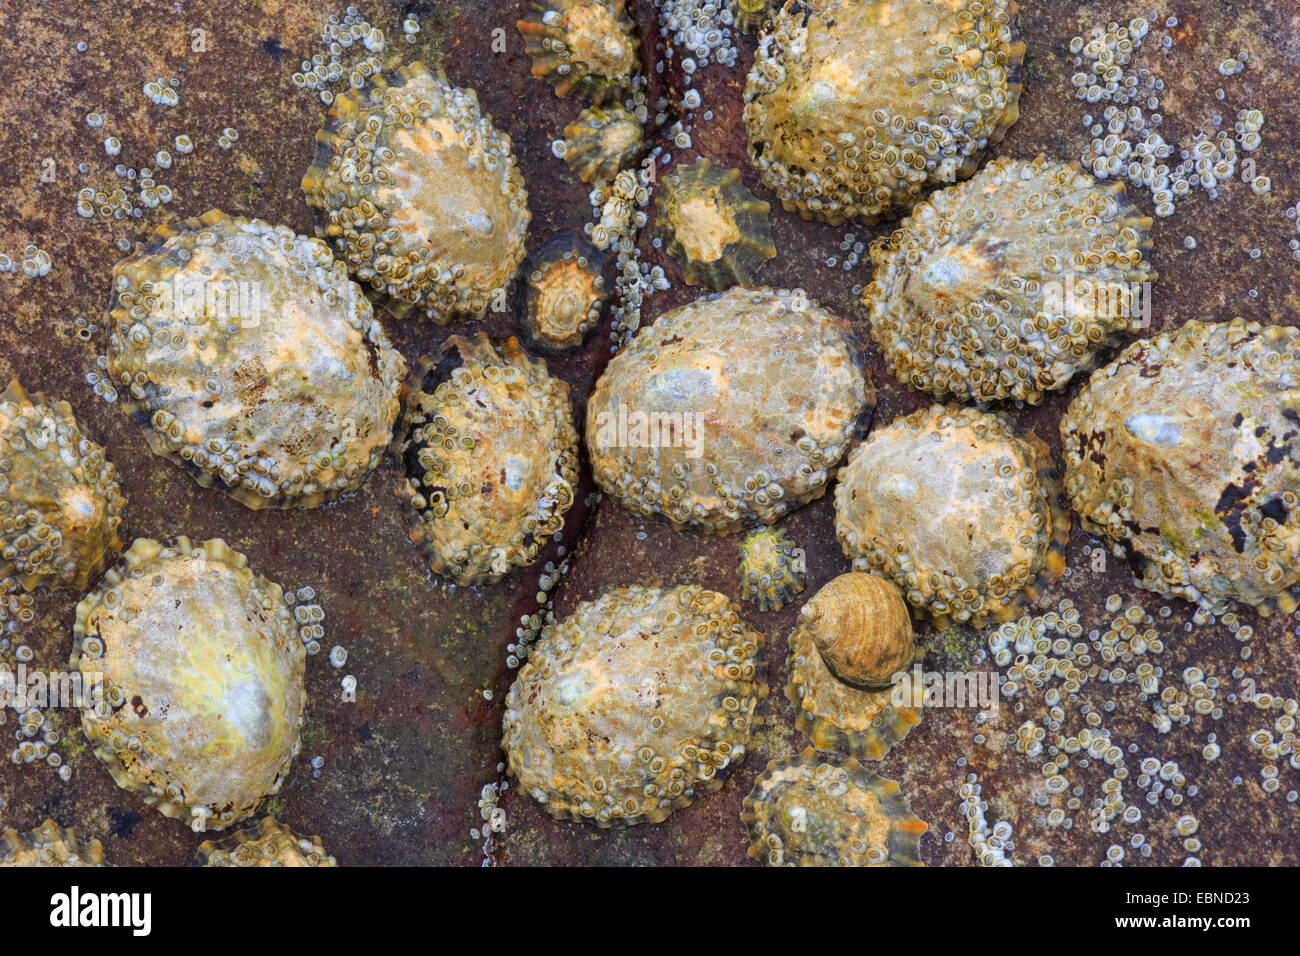 Napfschnecken, echte Napfschnecken (Patellidae), Napfschnecken auf einem Felsen, Großbritannien, Schottland Stockfoto